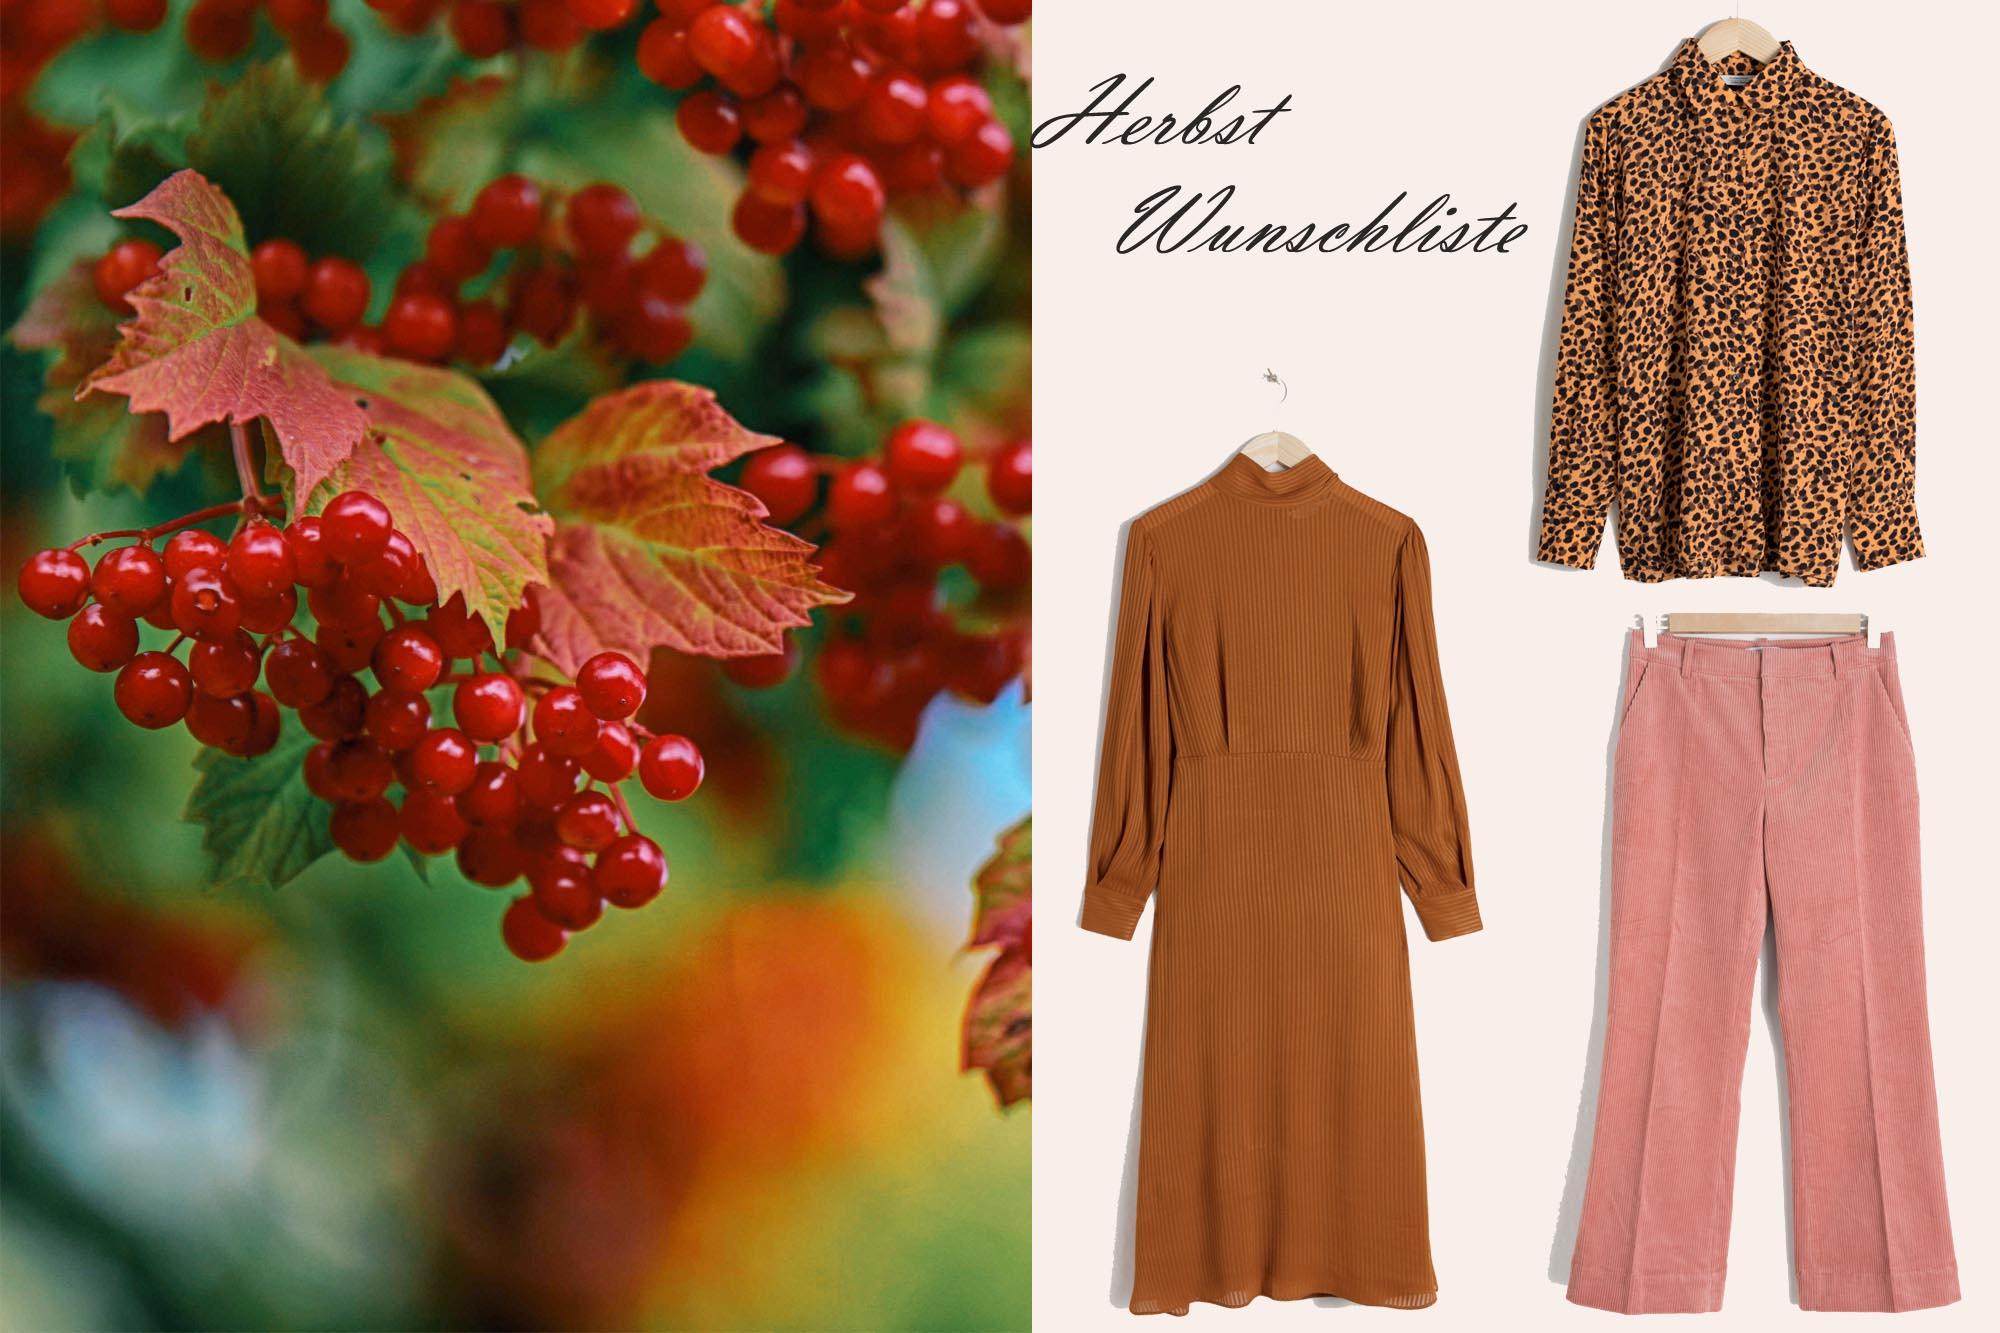 Modeblog-Deutschland-Herbst-Wuschliste